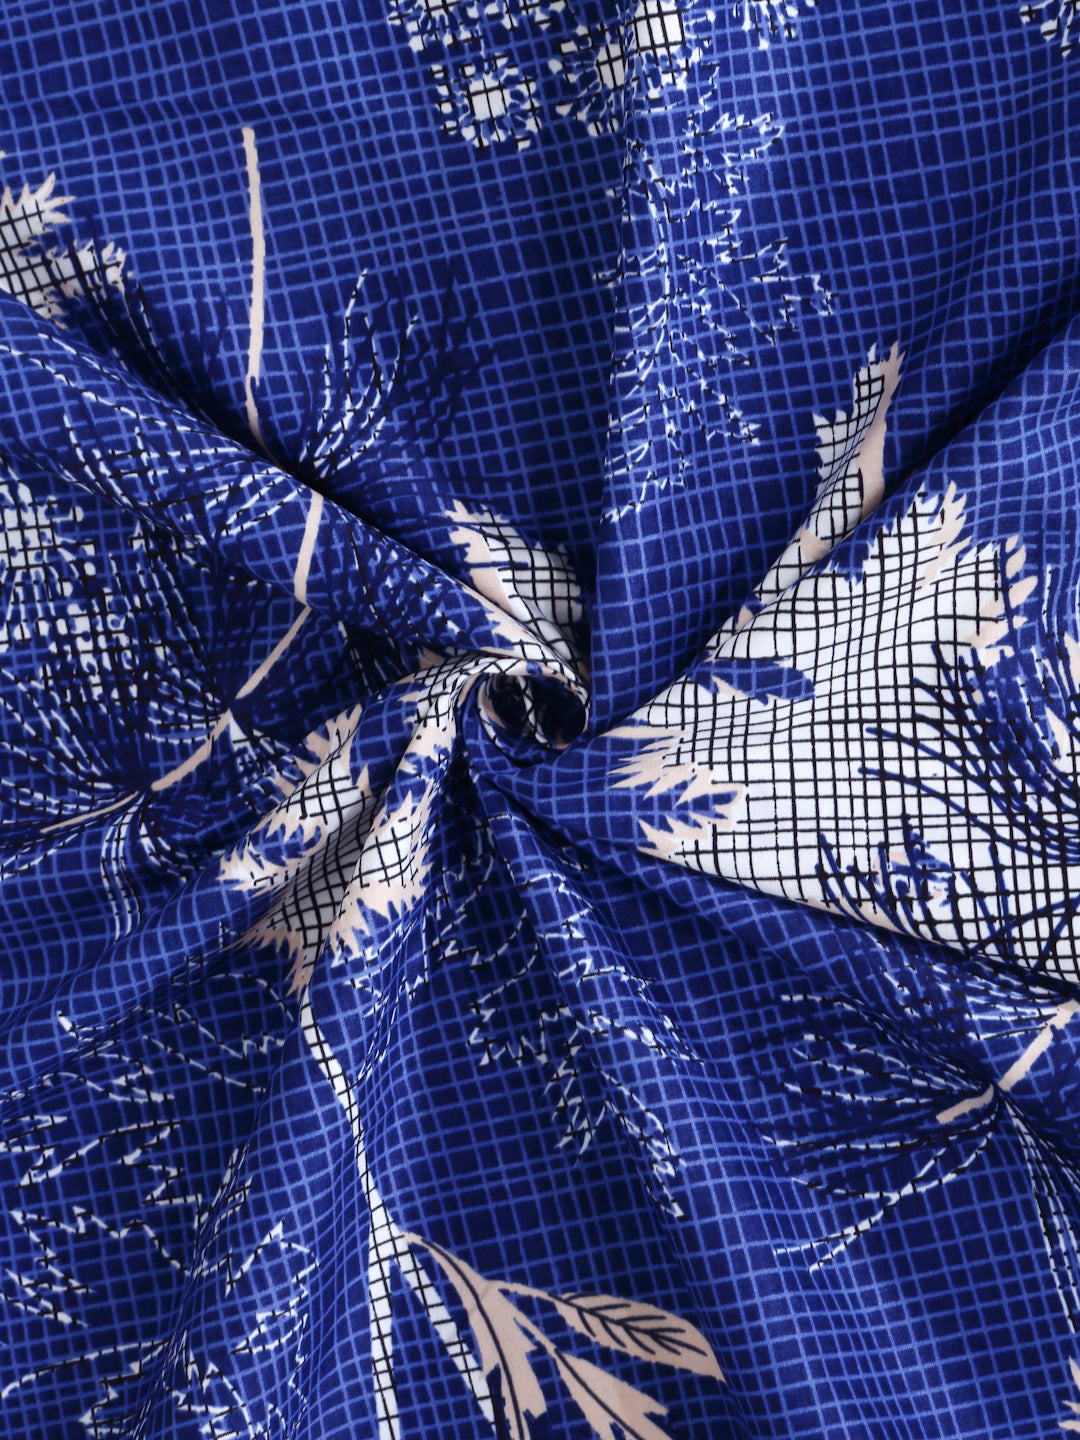 Arrabi Blue Leaf TC Cotton Blend Single Size Bedsheet with 1 Pillow Cover (215 X 150 cm)